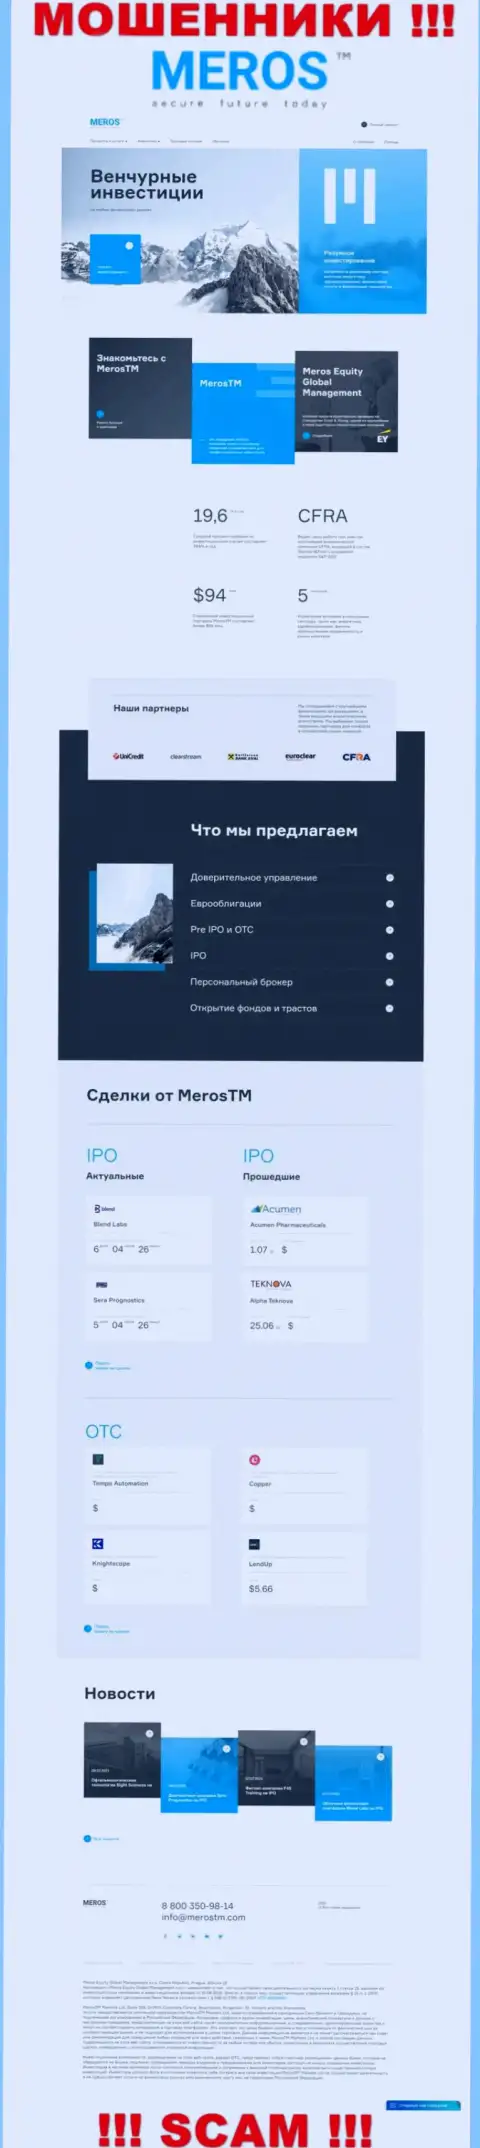 Обзор официального информационного ресурса мошенников МеросТМ Ком